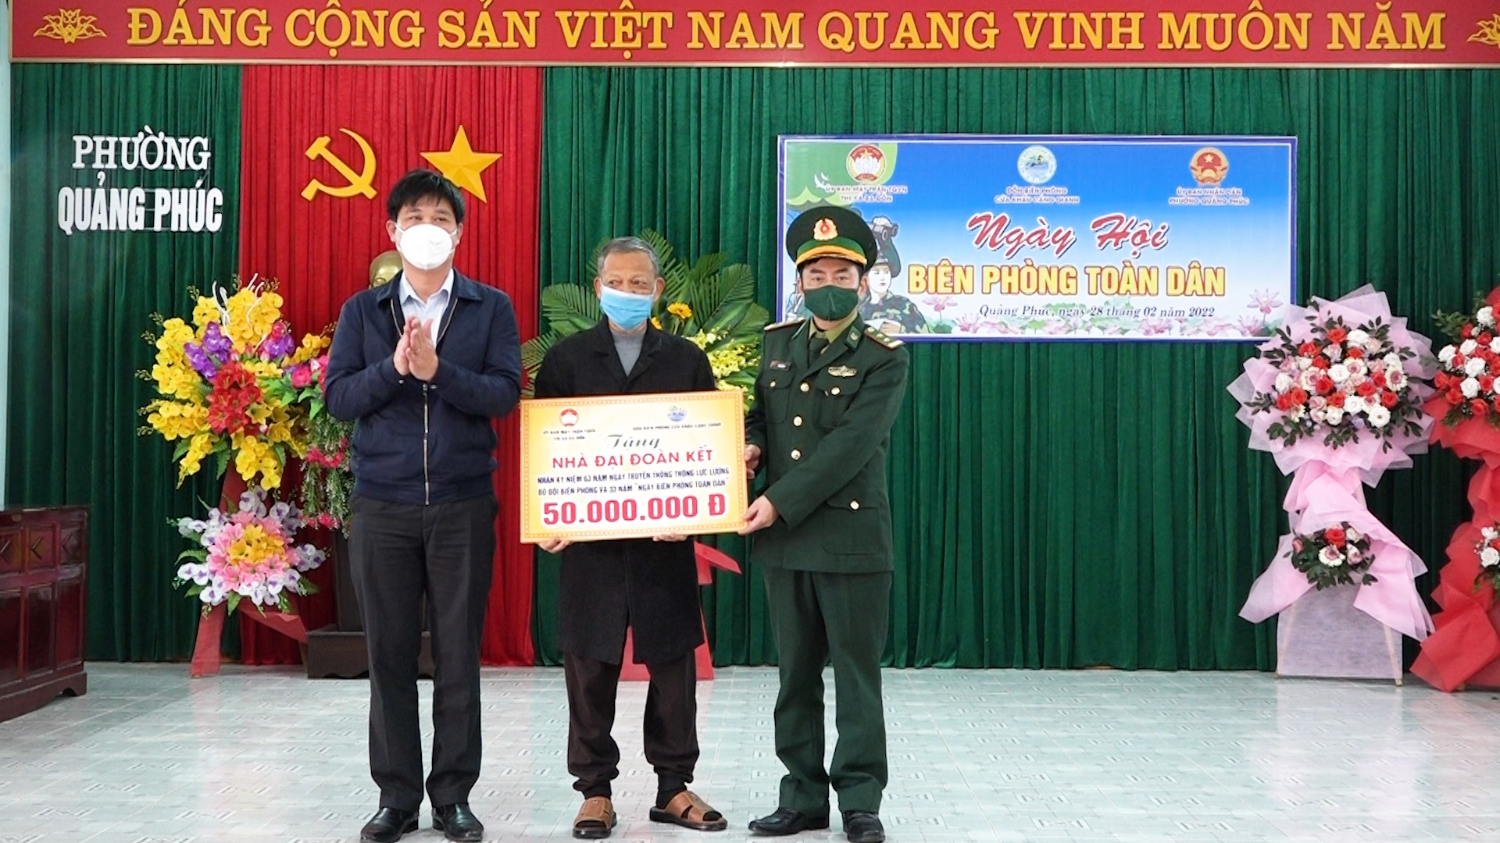 MTTQVN thị xã phối hợp với Đồn Biên phòng CKCG tặng nhà đại đoàn kết cho ông Nguyễn Xuân Vui, phường Quảng Phúc